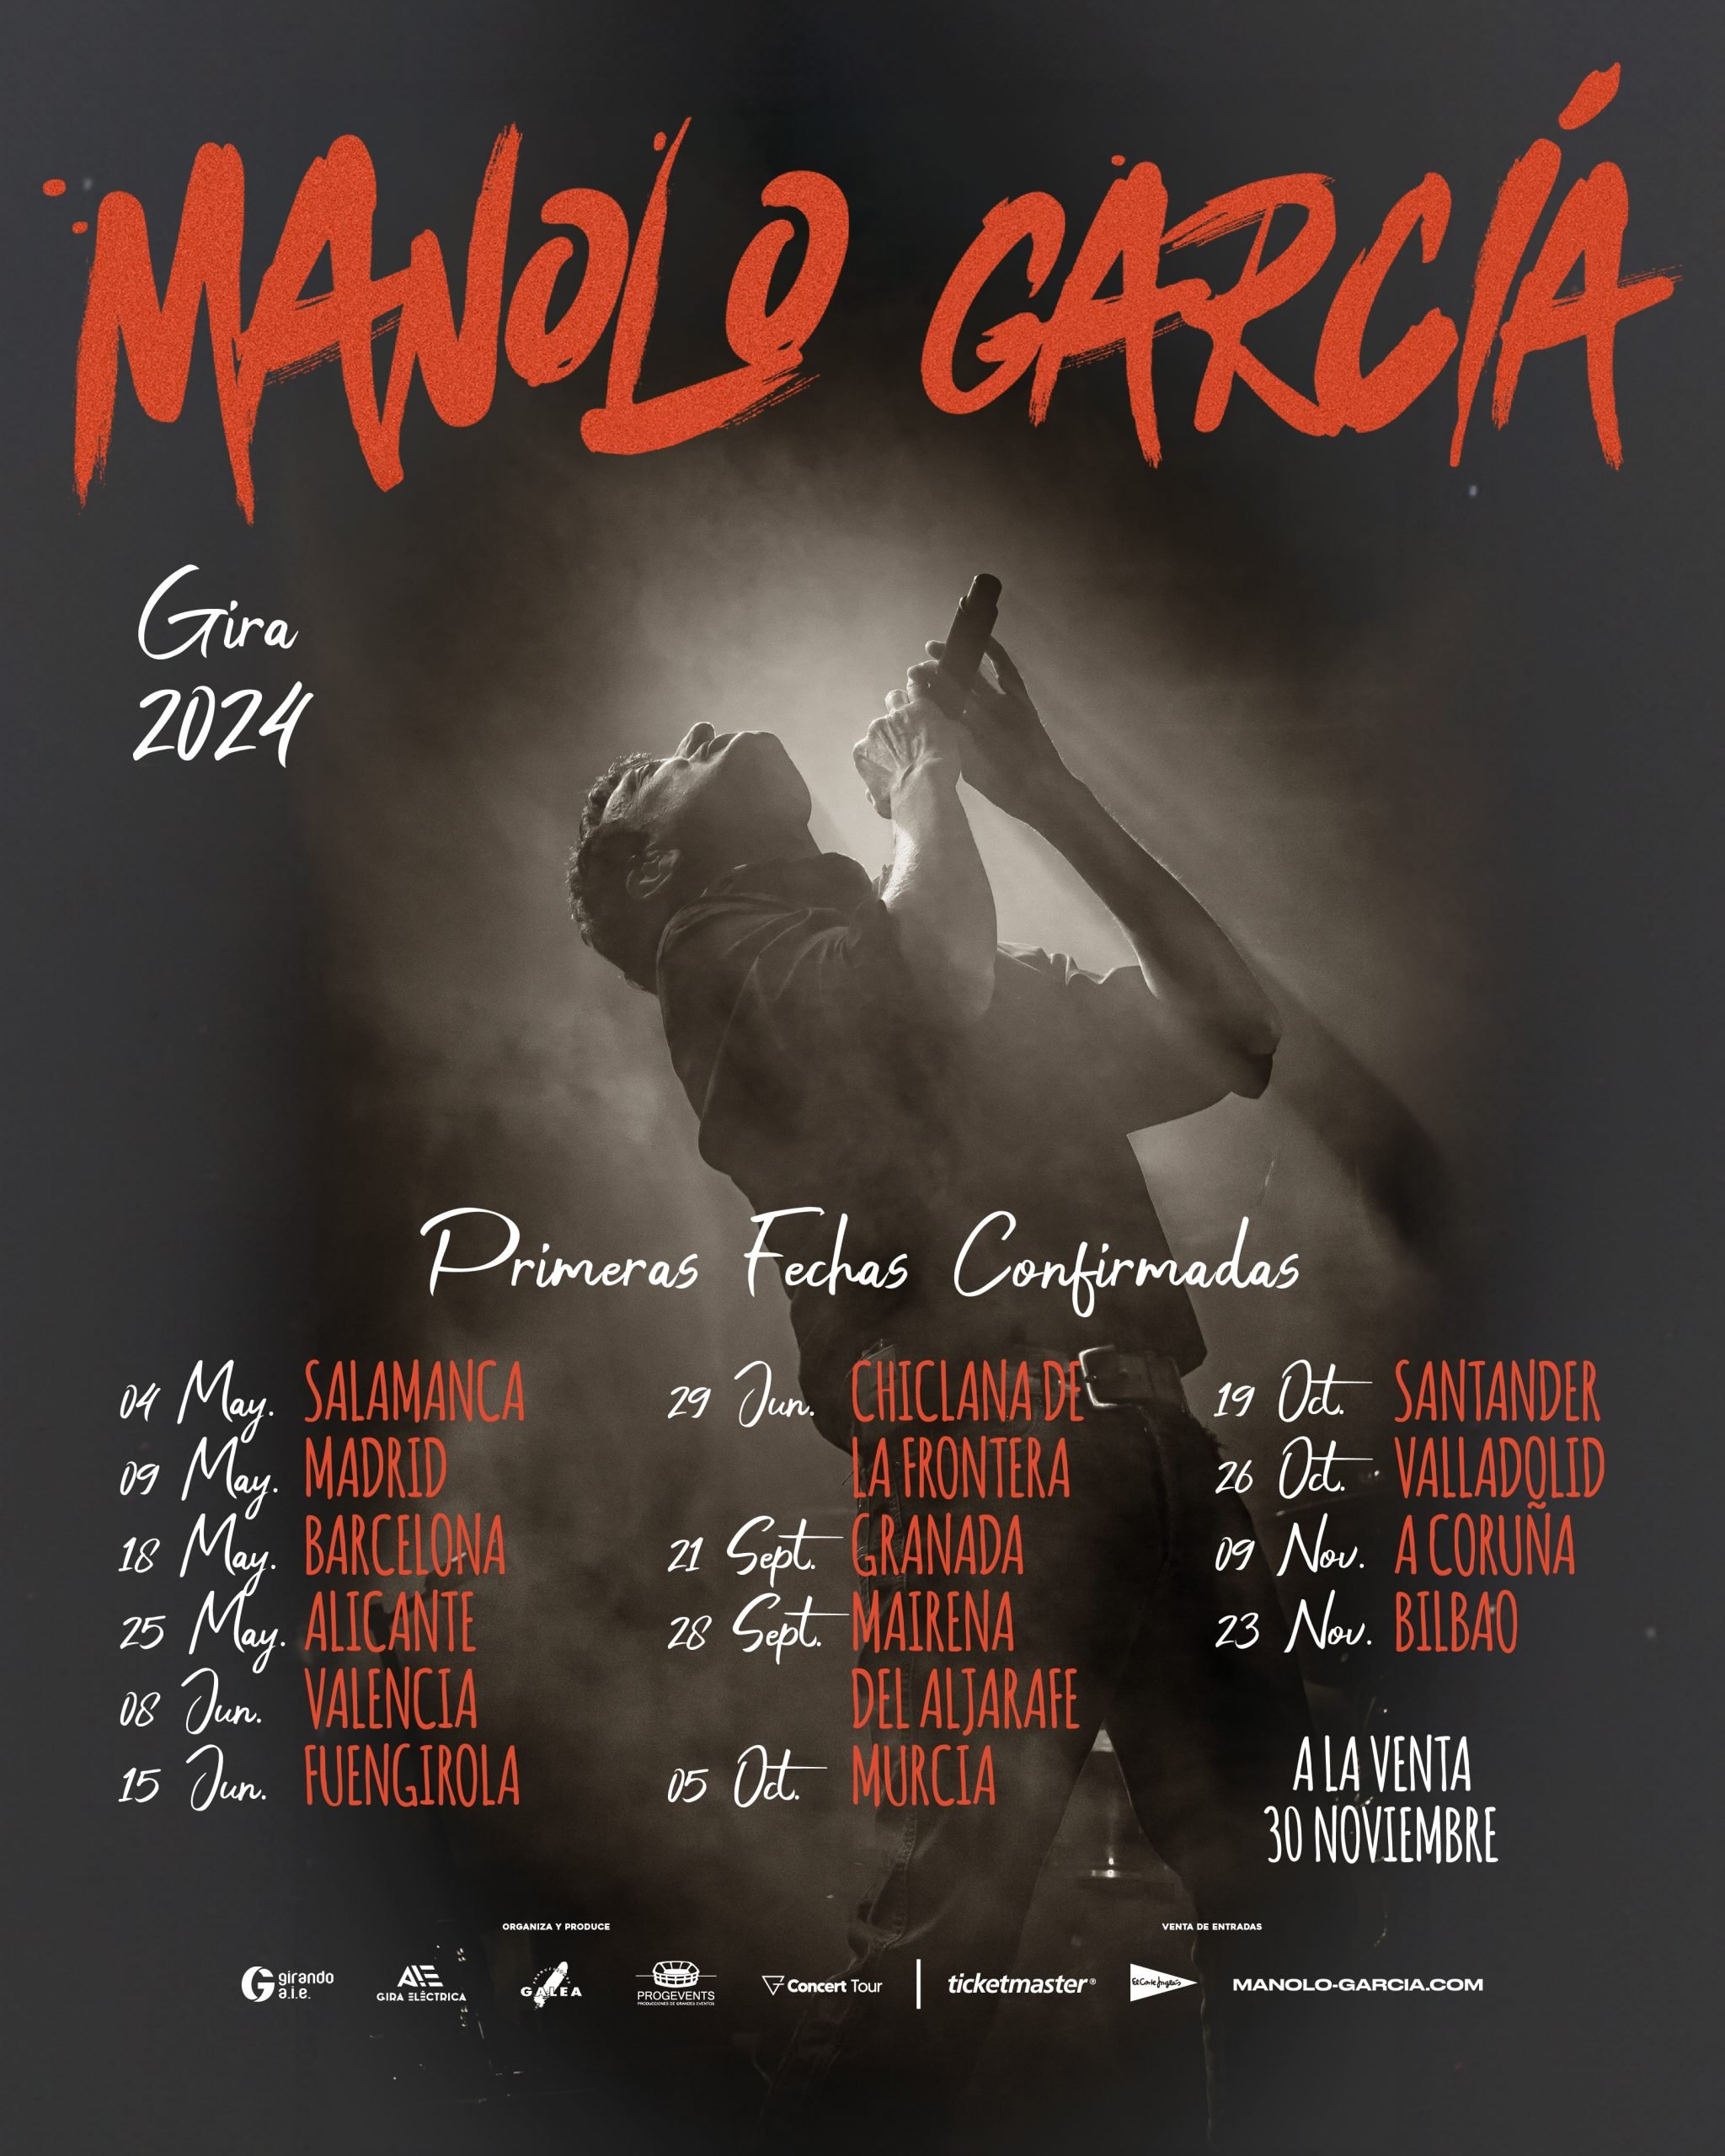 Primeras fechas de la nueva gira de Manolo García